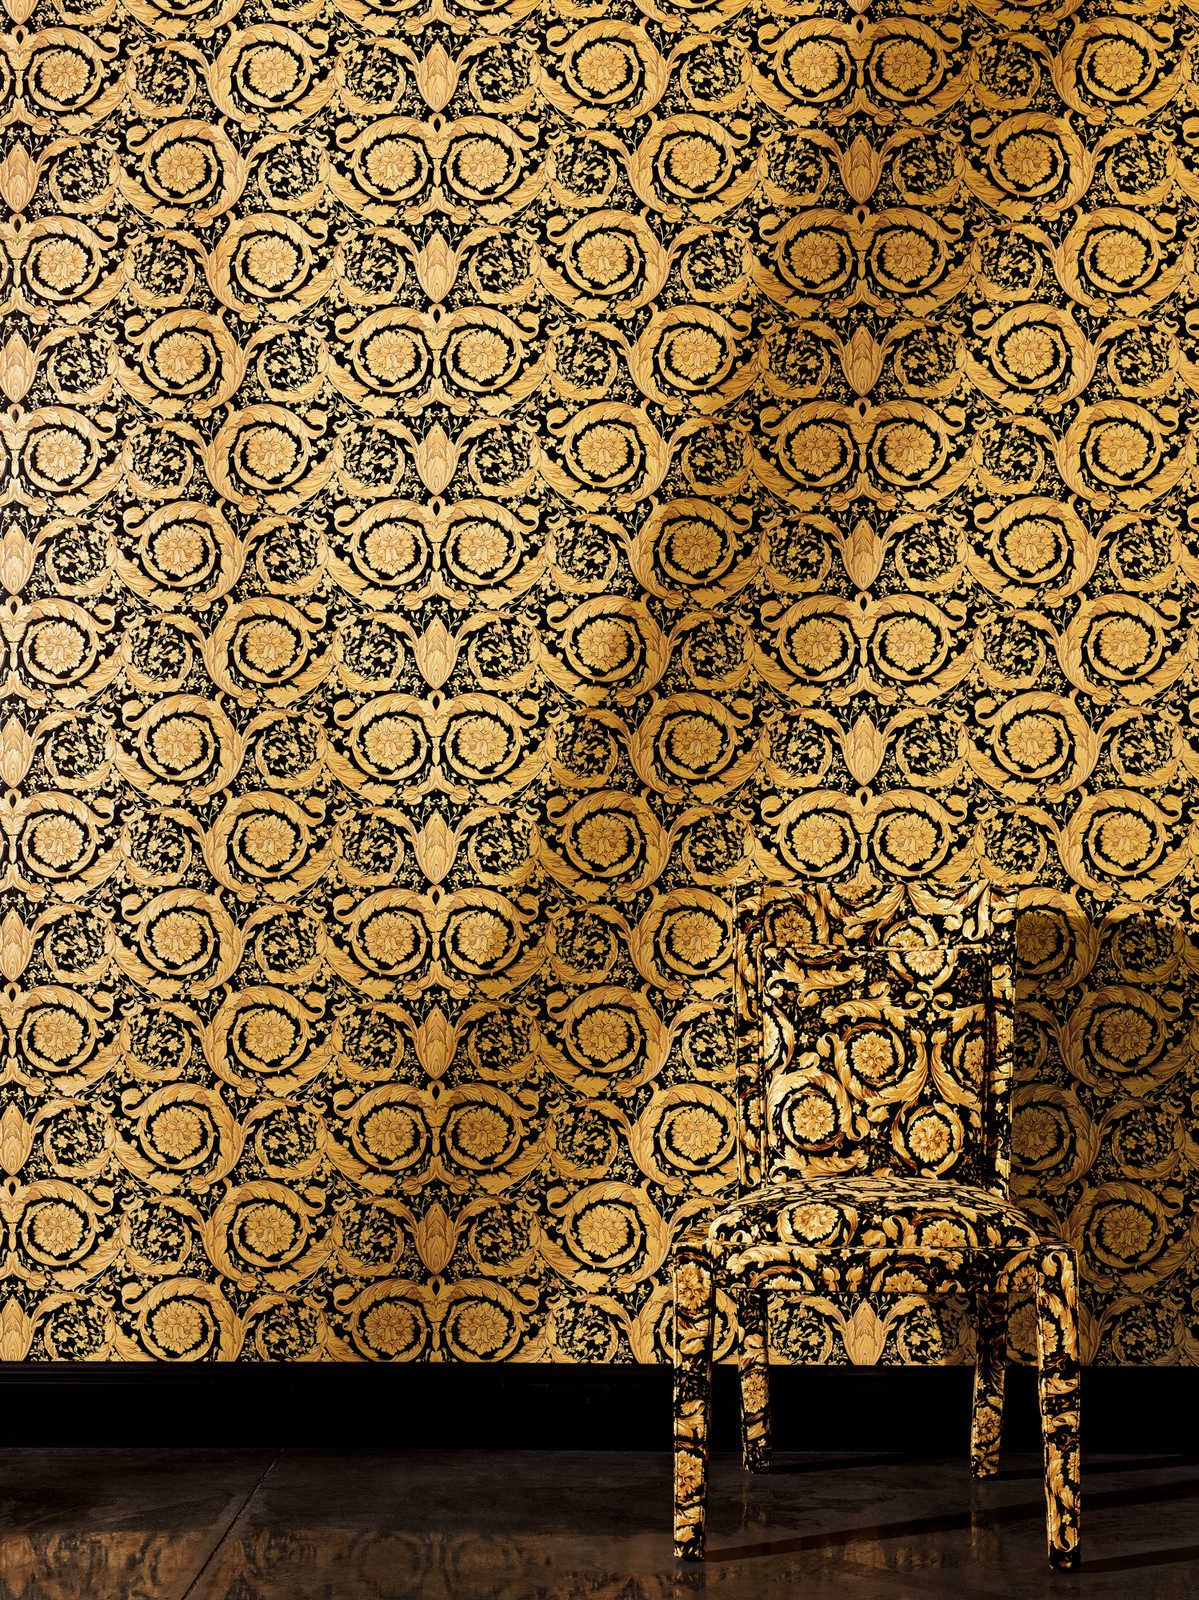             VERSACE Tapete mit ornamentalem Blumenmuster – Gold, Schwarz
        